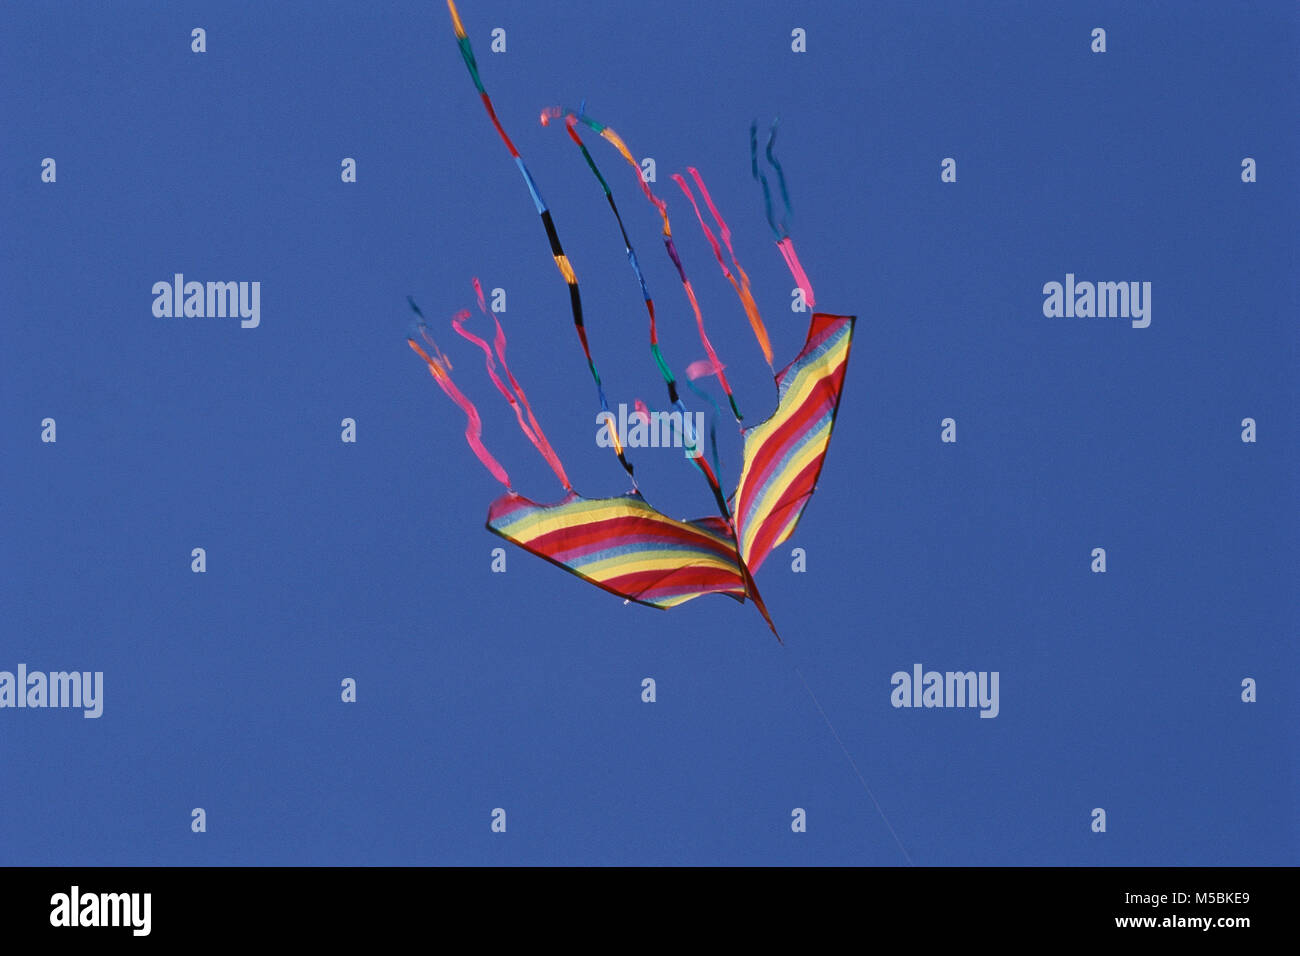 Kite flying on Kite Festival, Shivaji Park, Mumbai, Maharashtra, India Stock Photo